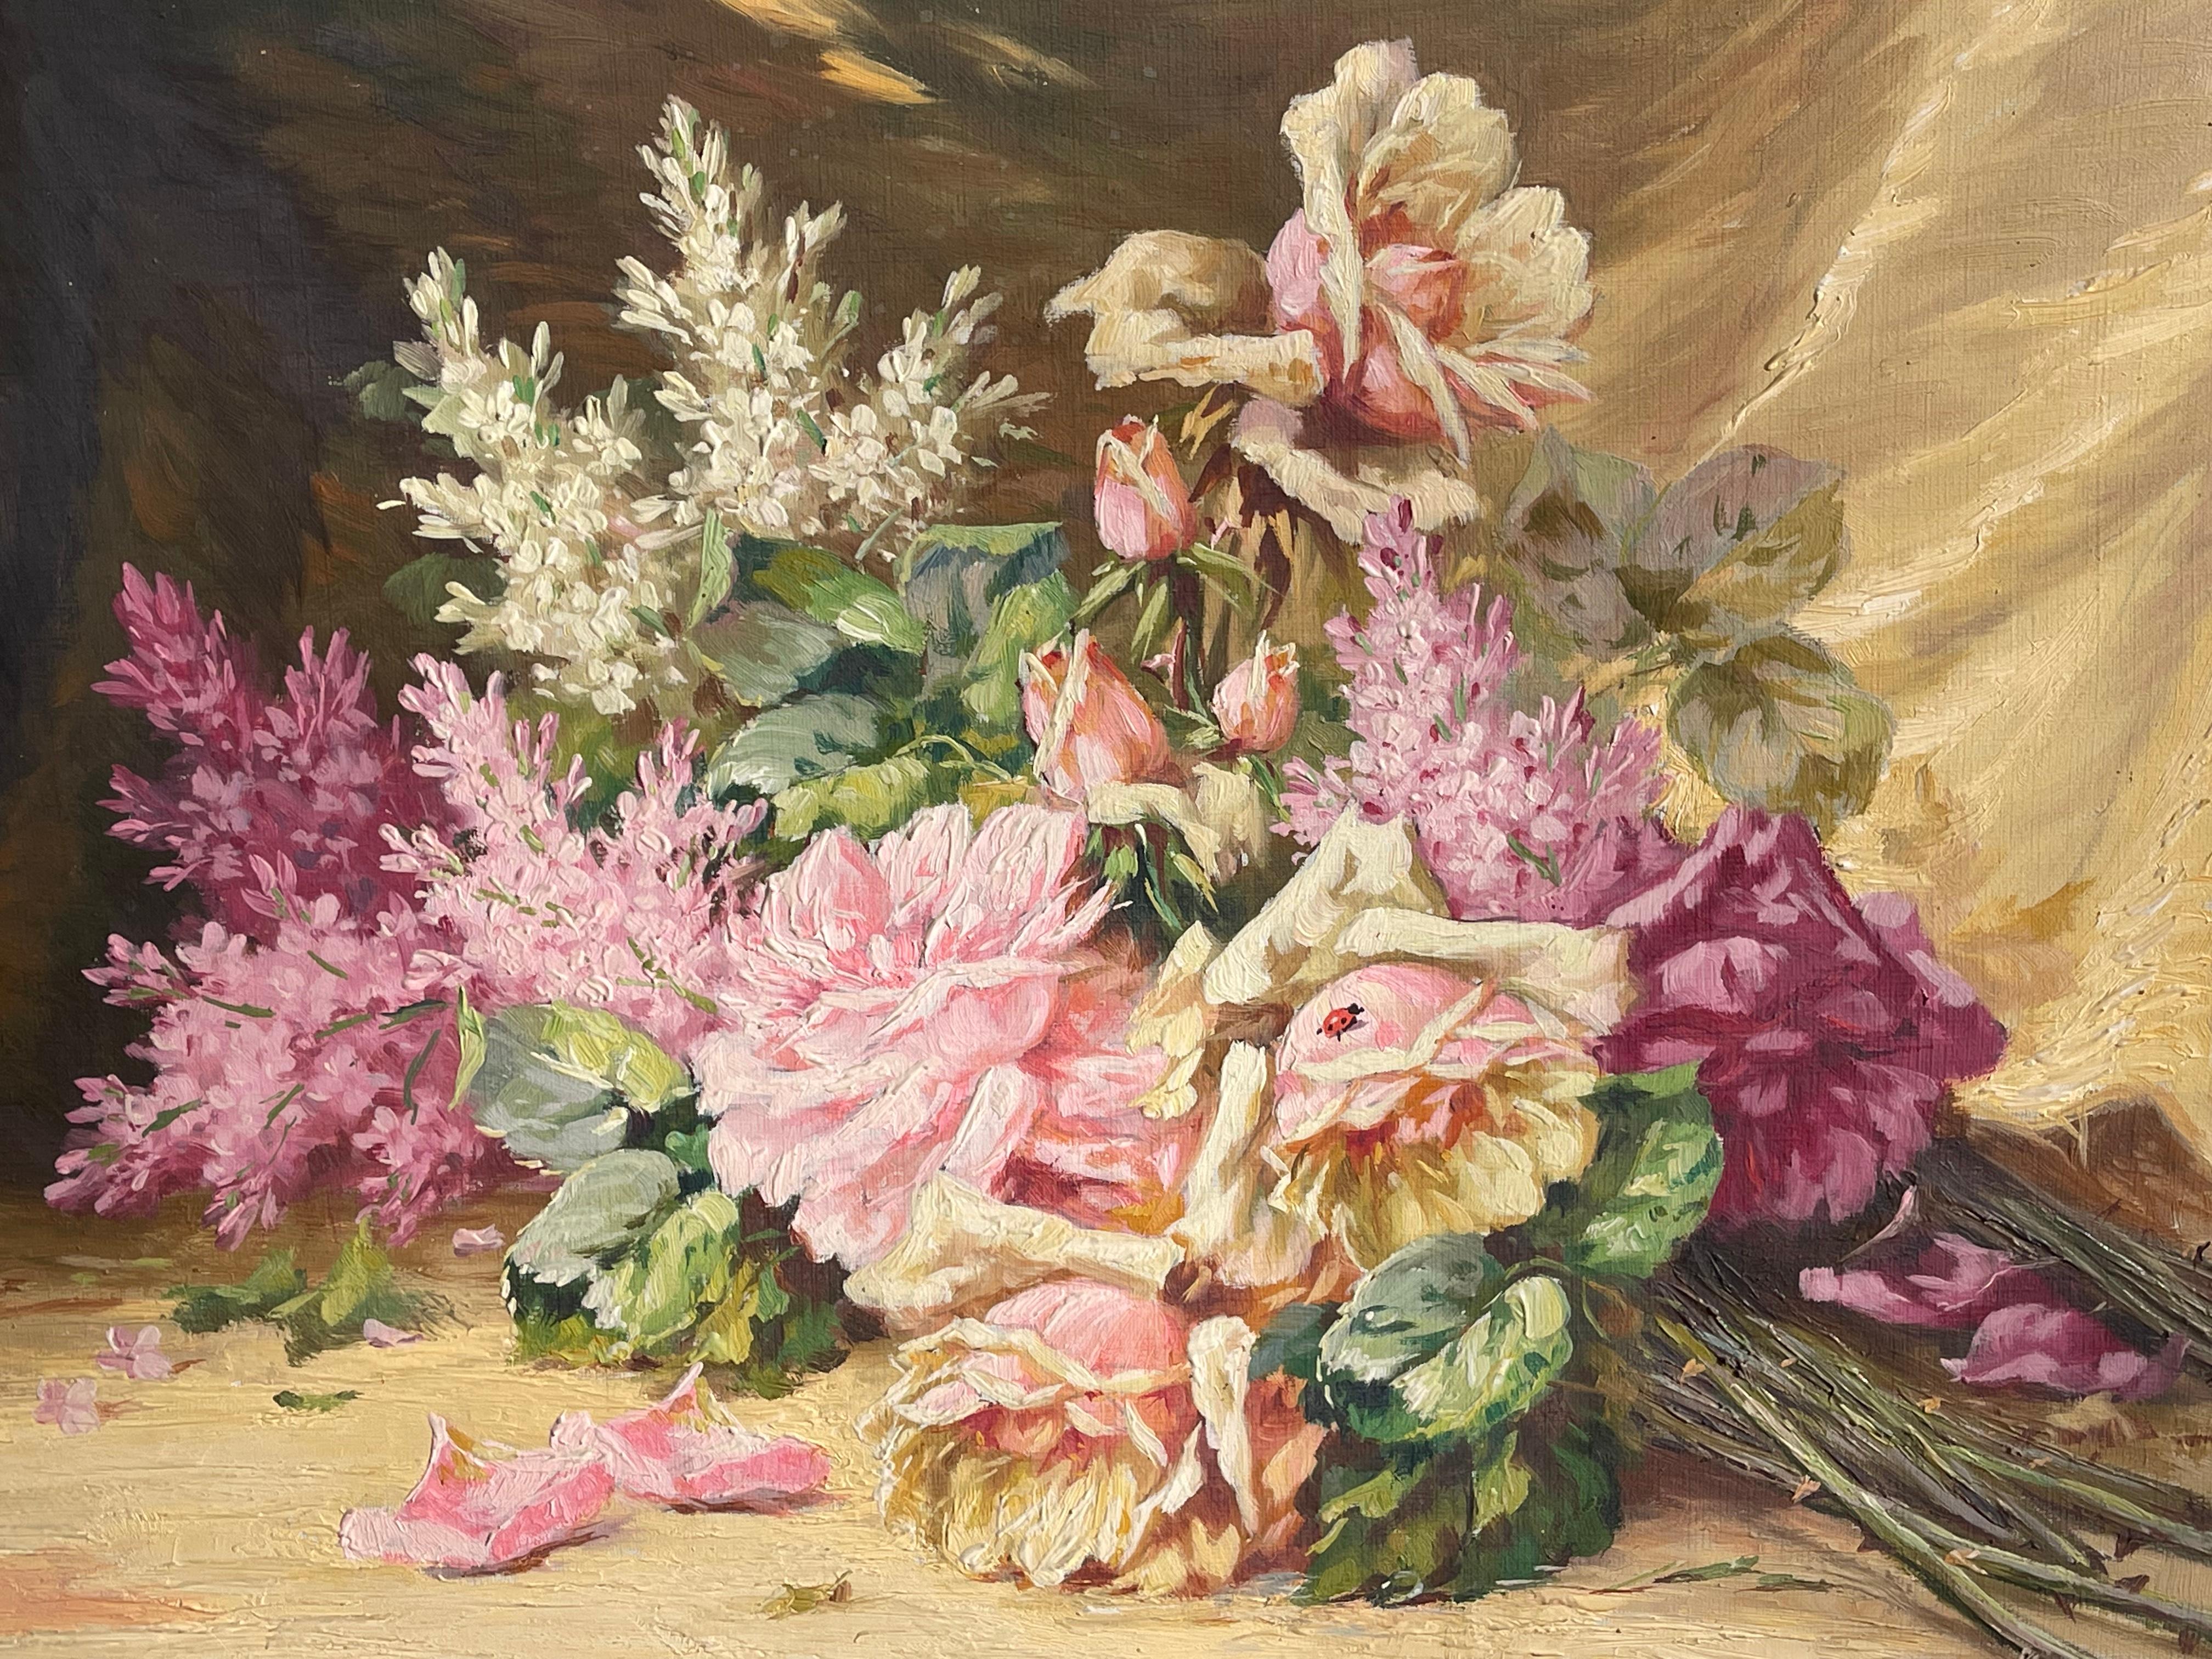 Jolie huile sur toile représentant un bouquet de fleurs aux couleurs pastel, à dominante rose. Signé en bas à droite 